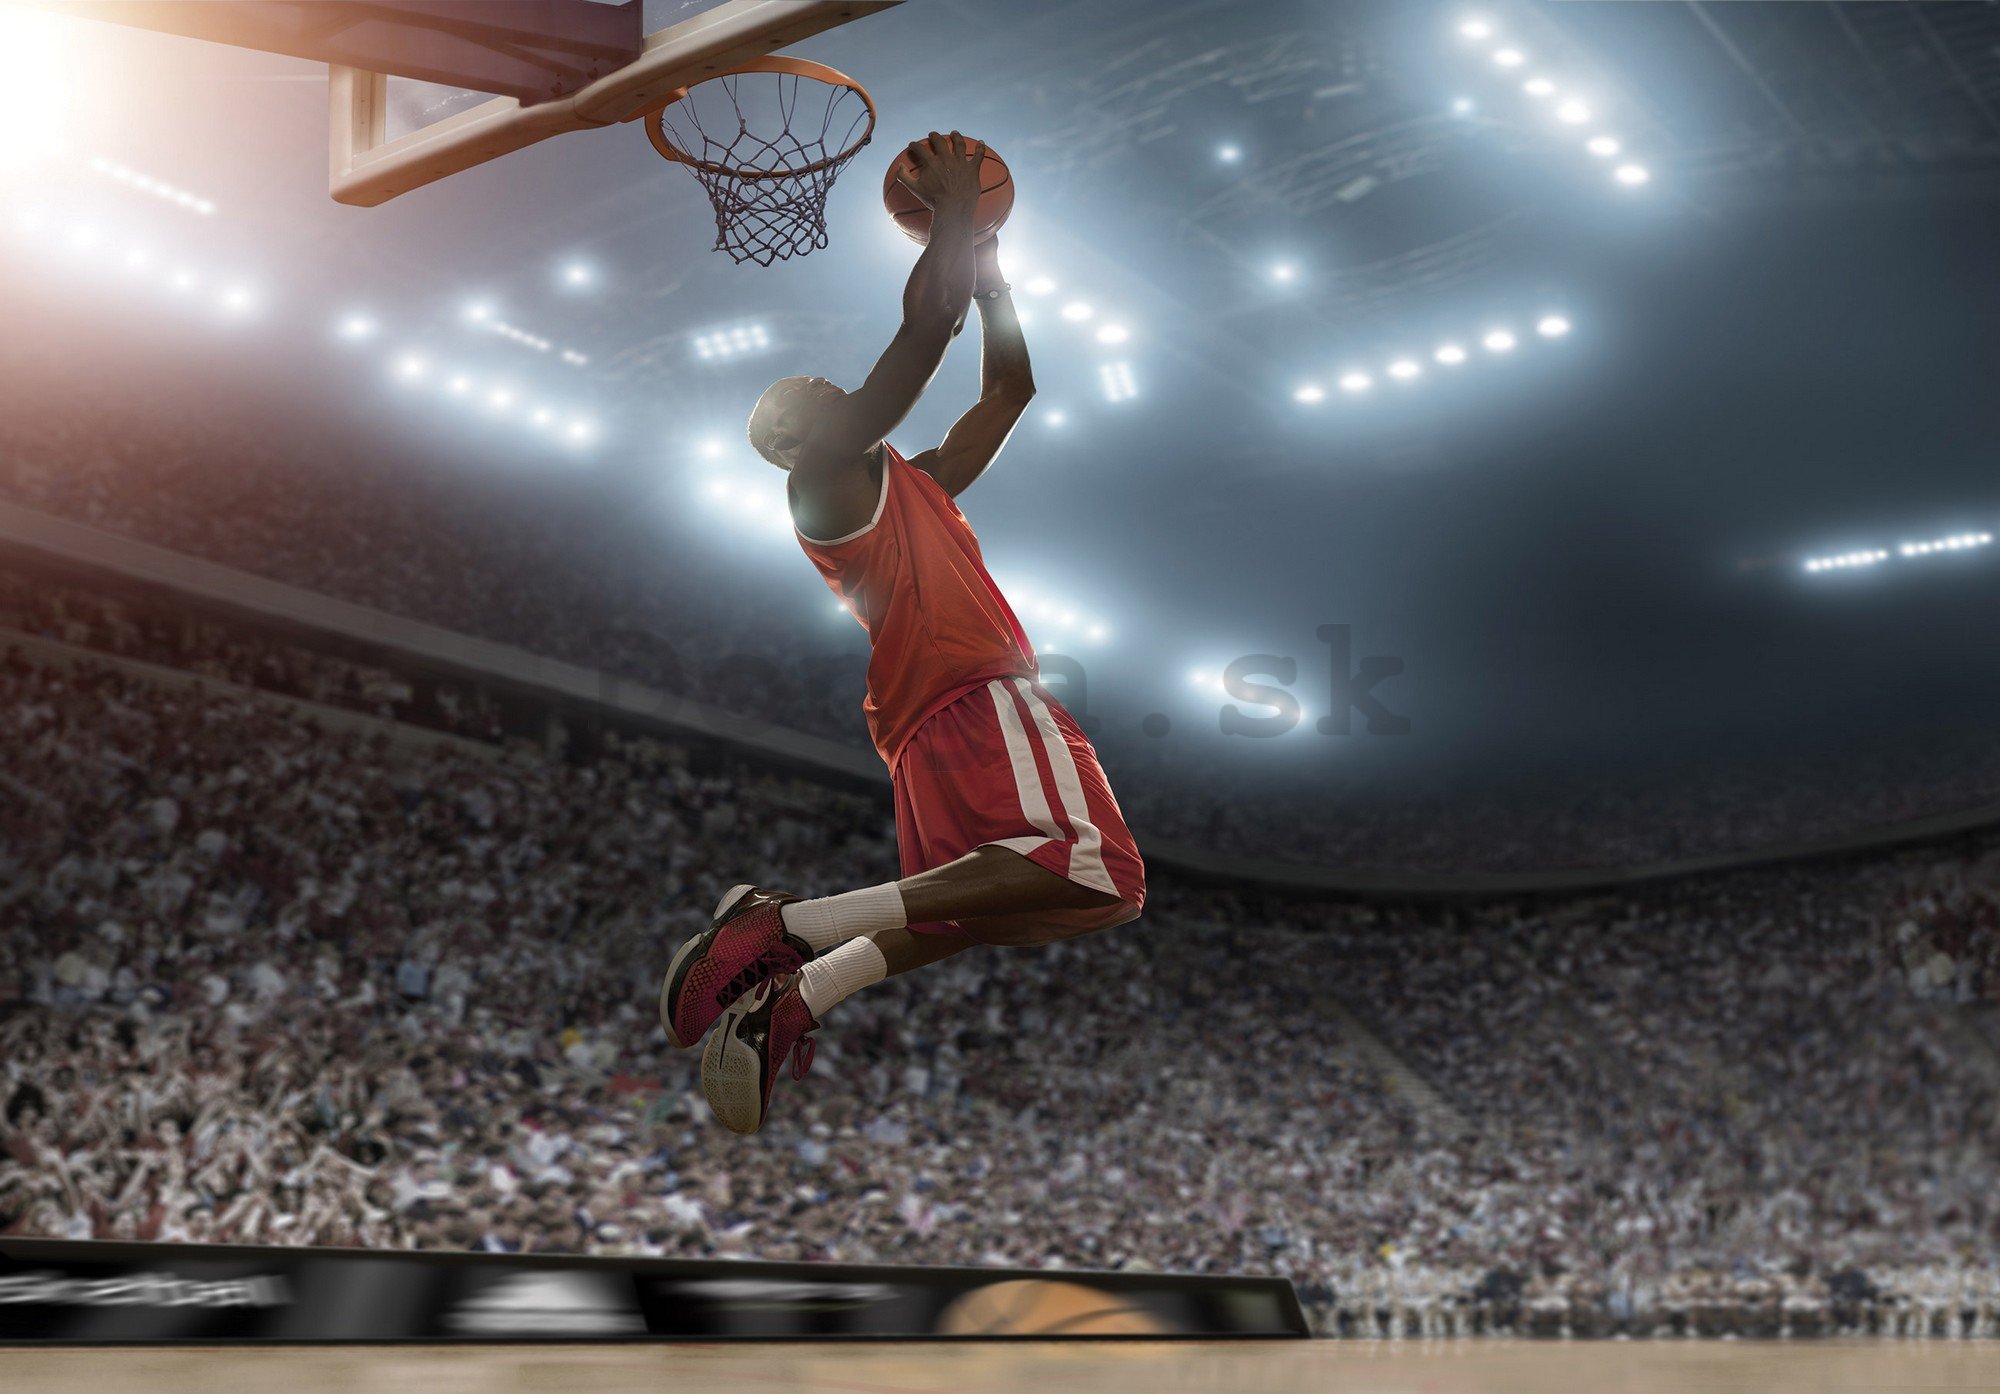 Fototapety vliesové: Basketball player - 368x254 cm